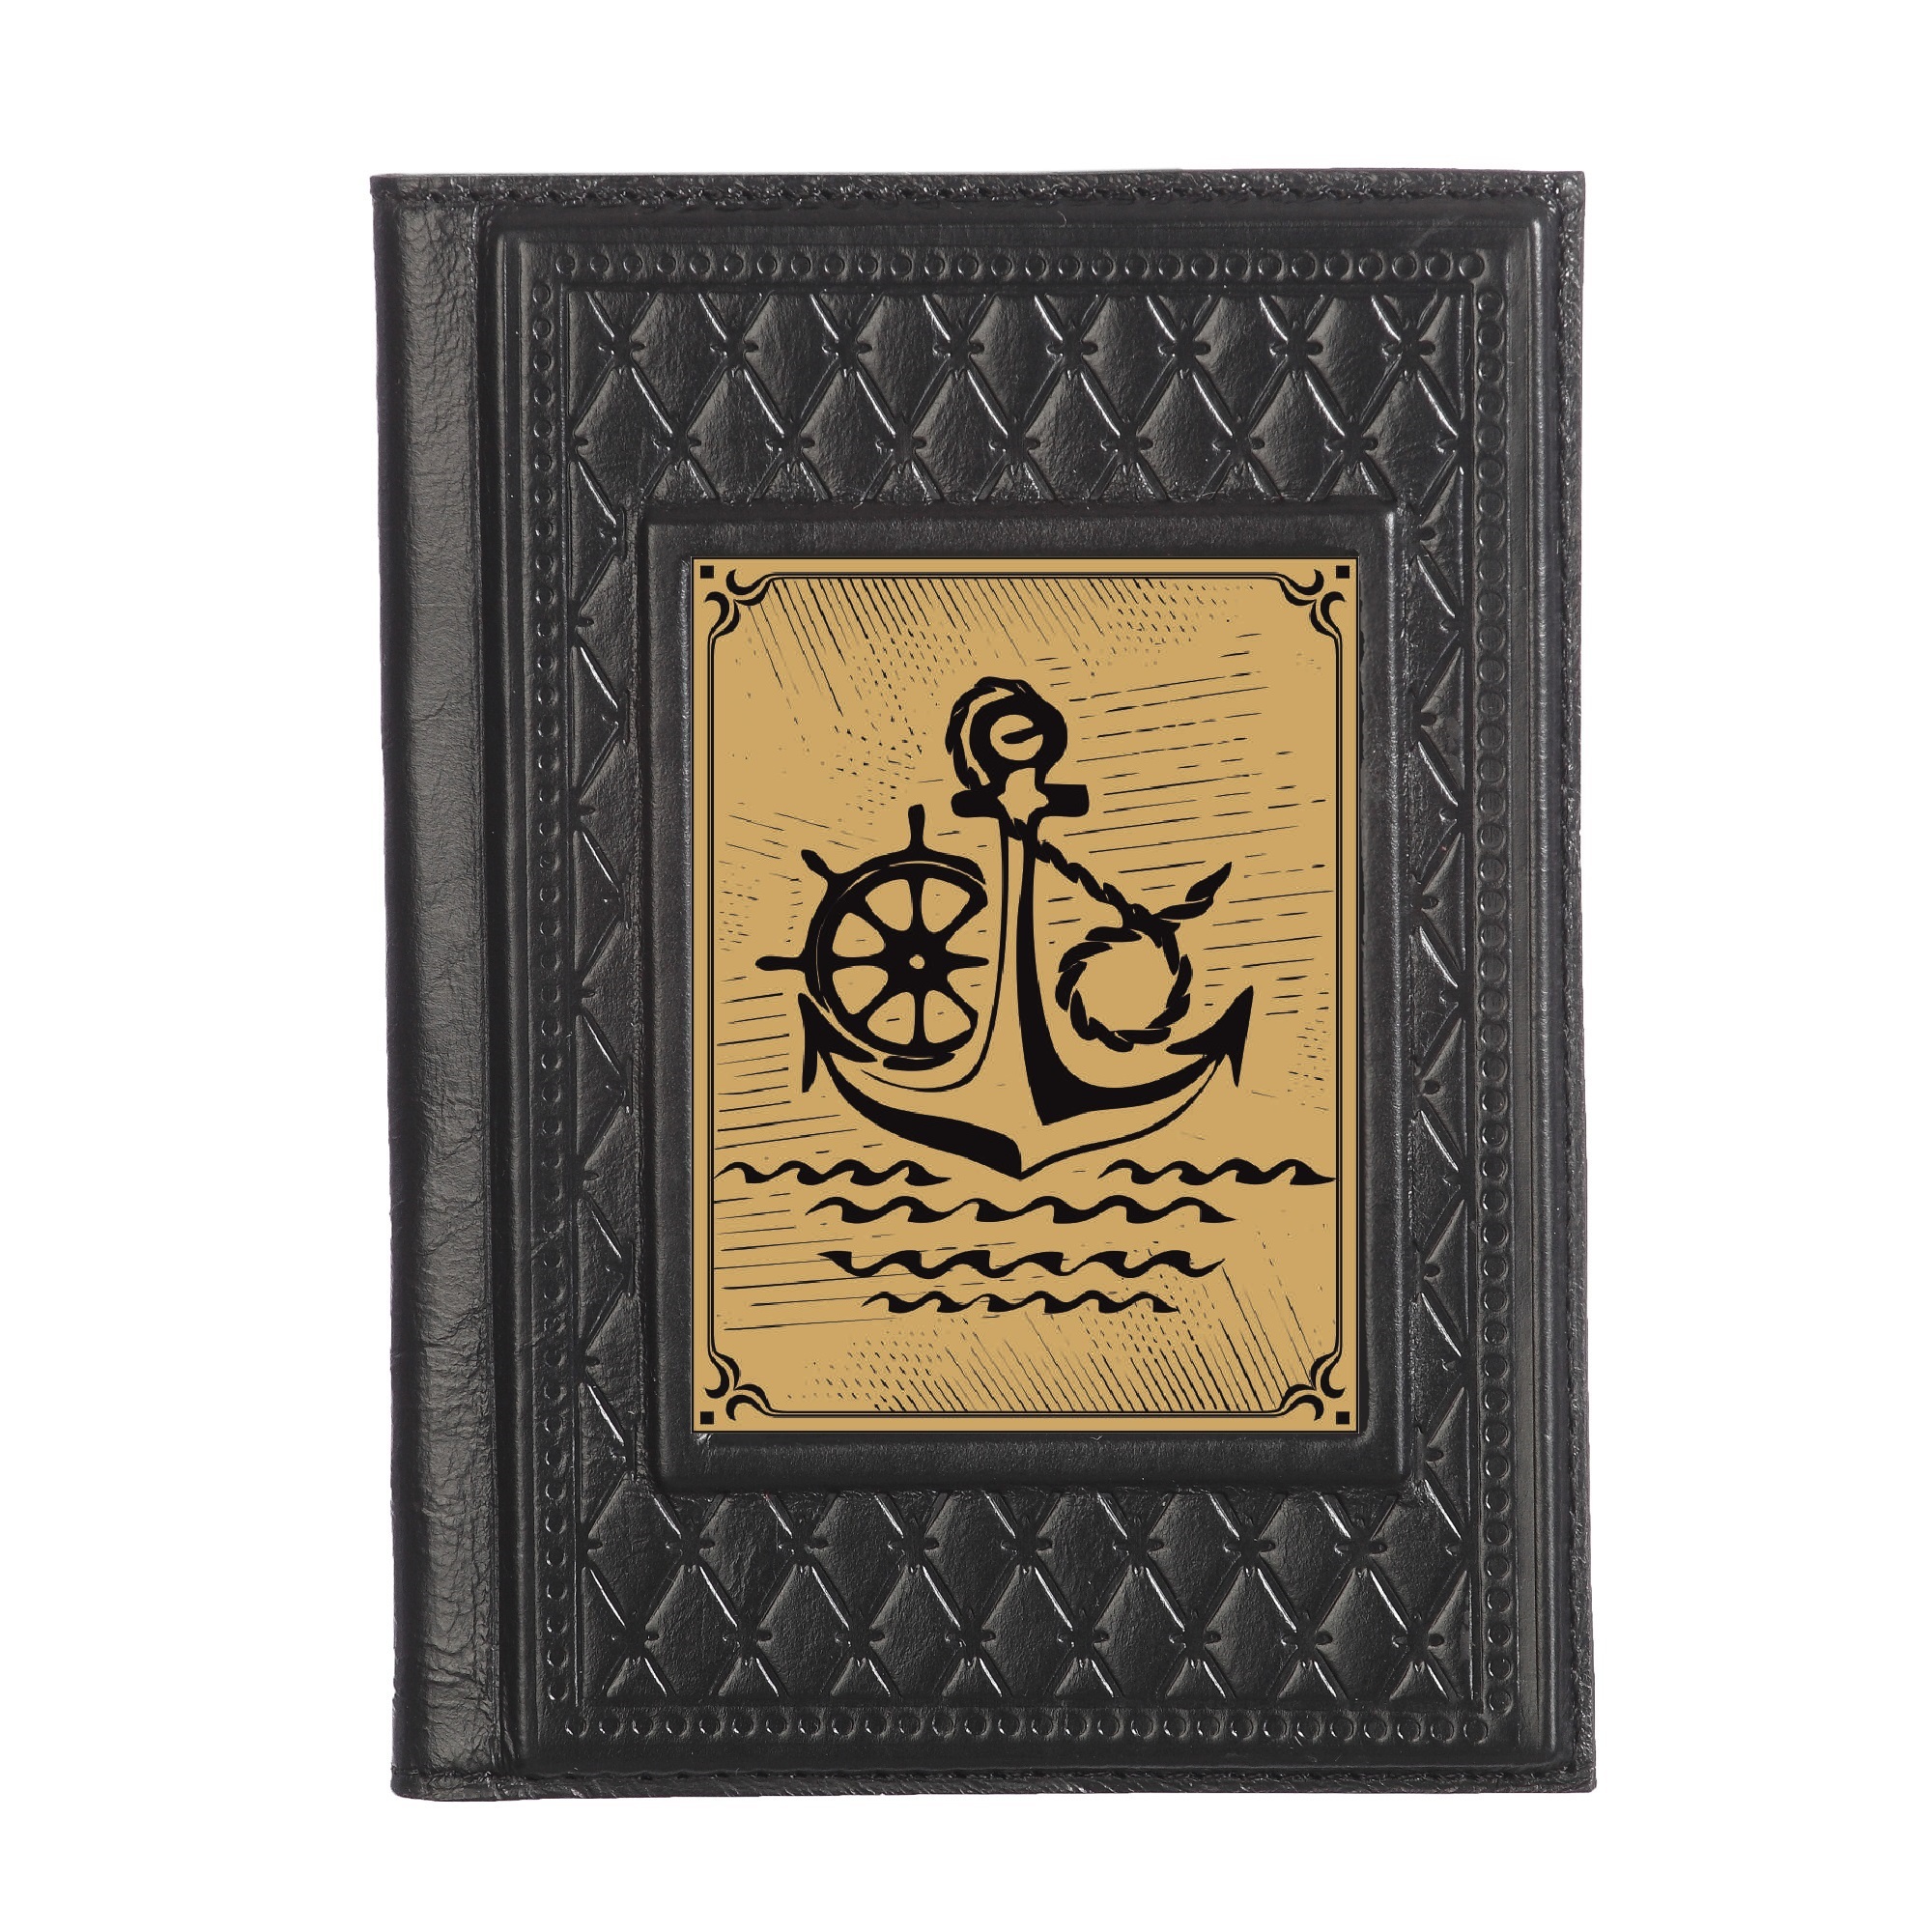 Обложка для паспорта Моряку-2 с сублимированной накладкой 009-18-62-26